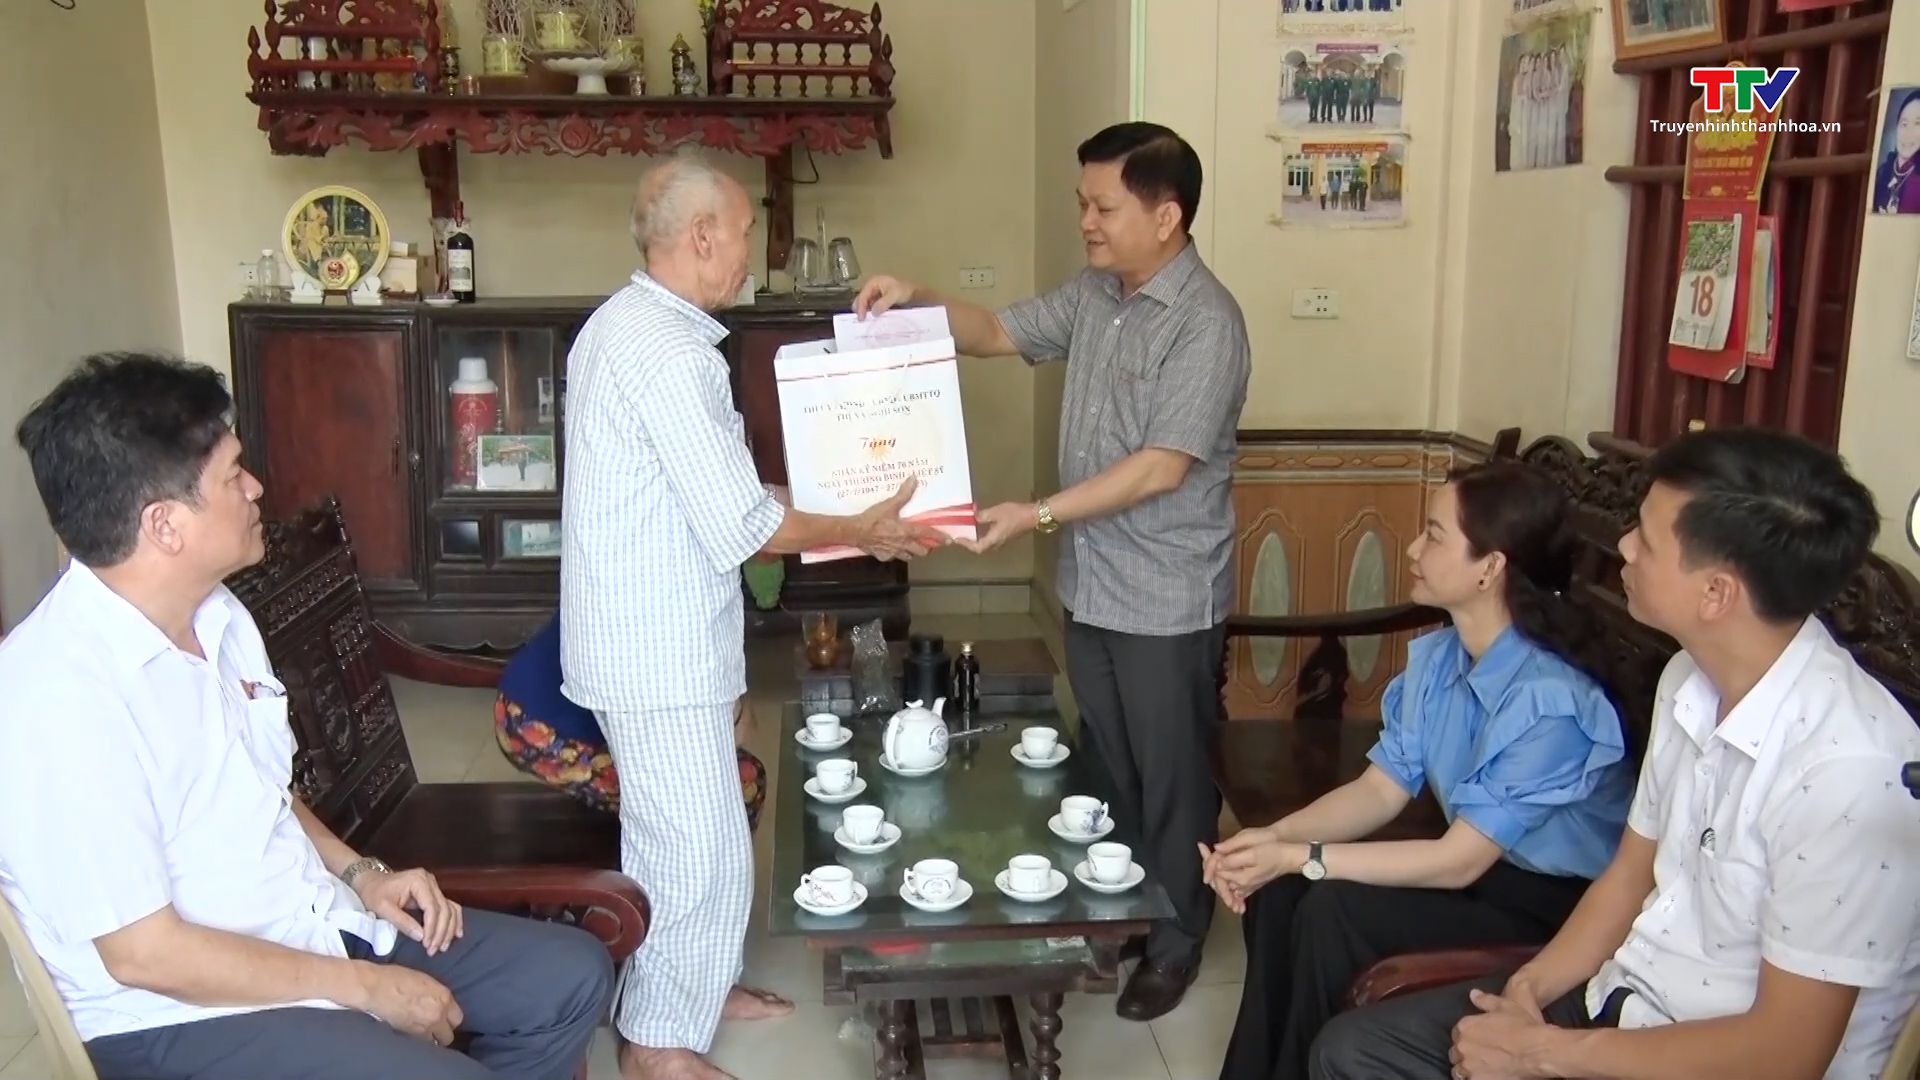 Thị xã Nghi Sơn tổ chức nhiều hoạt động tri ân người có công - Ảnh 2.